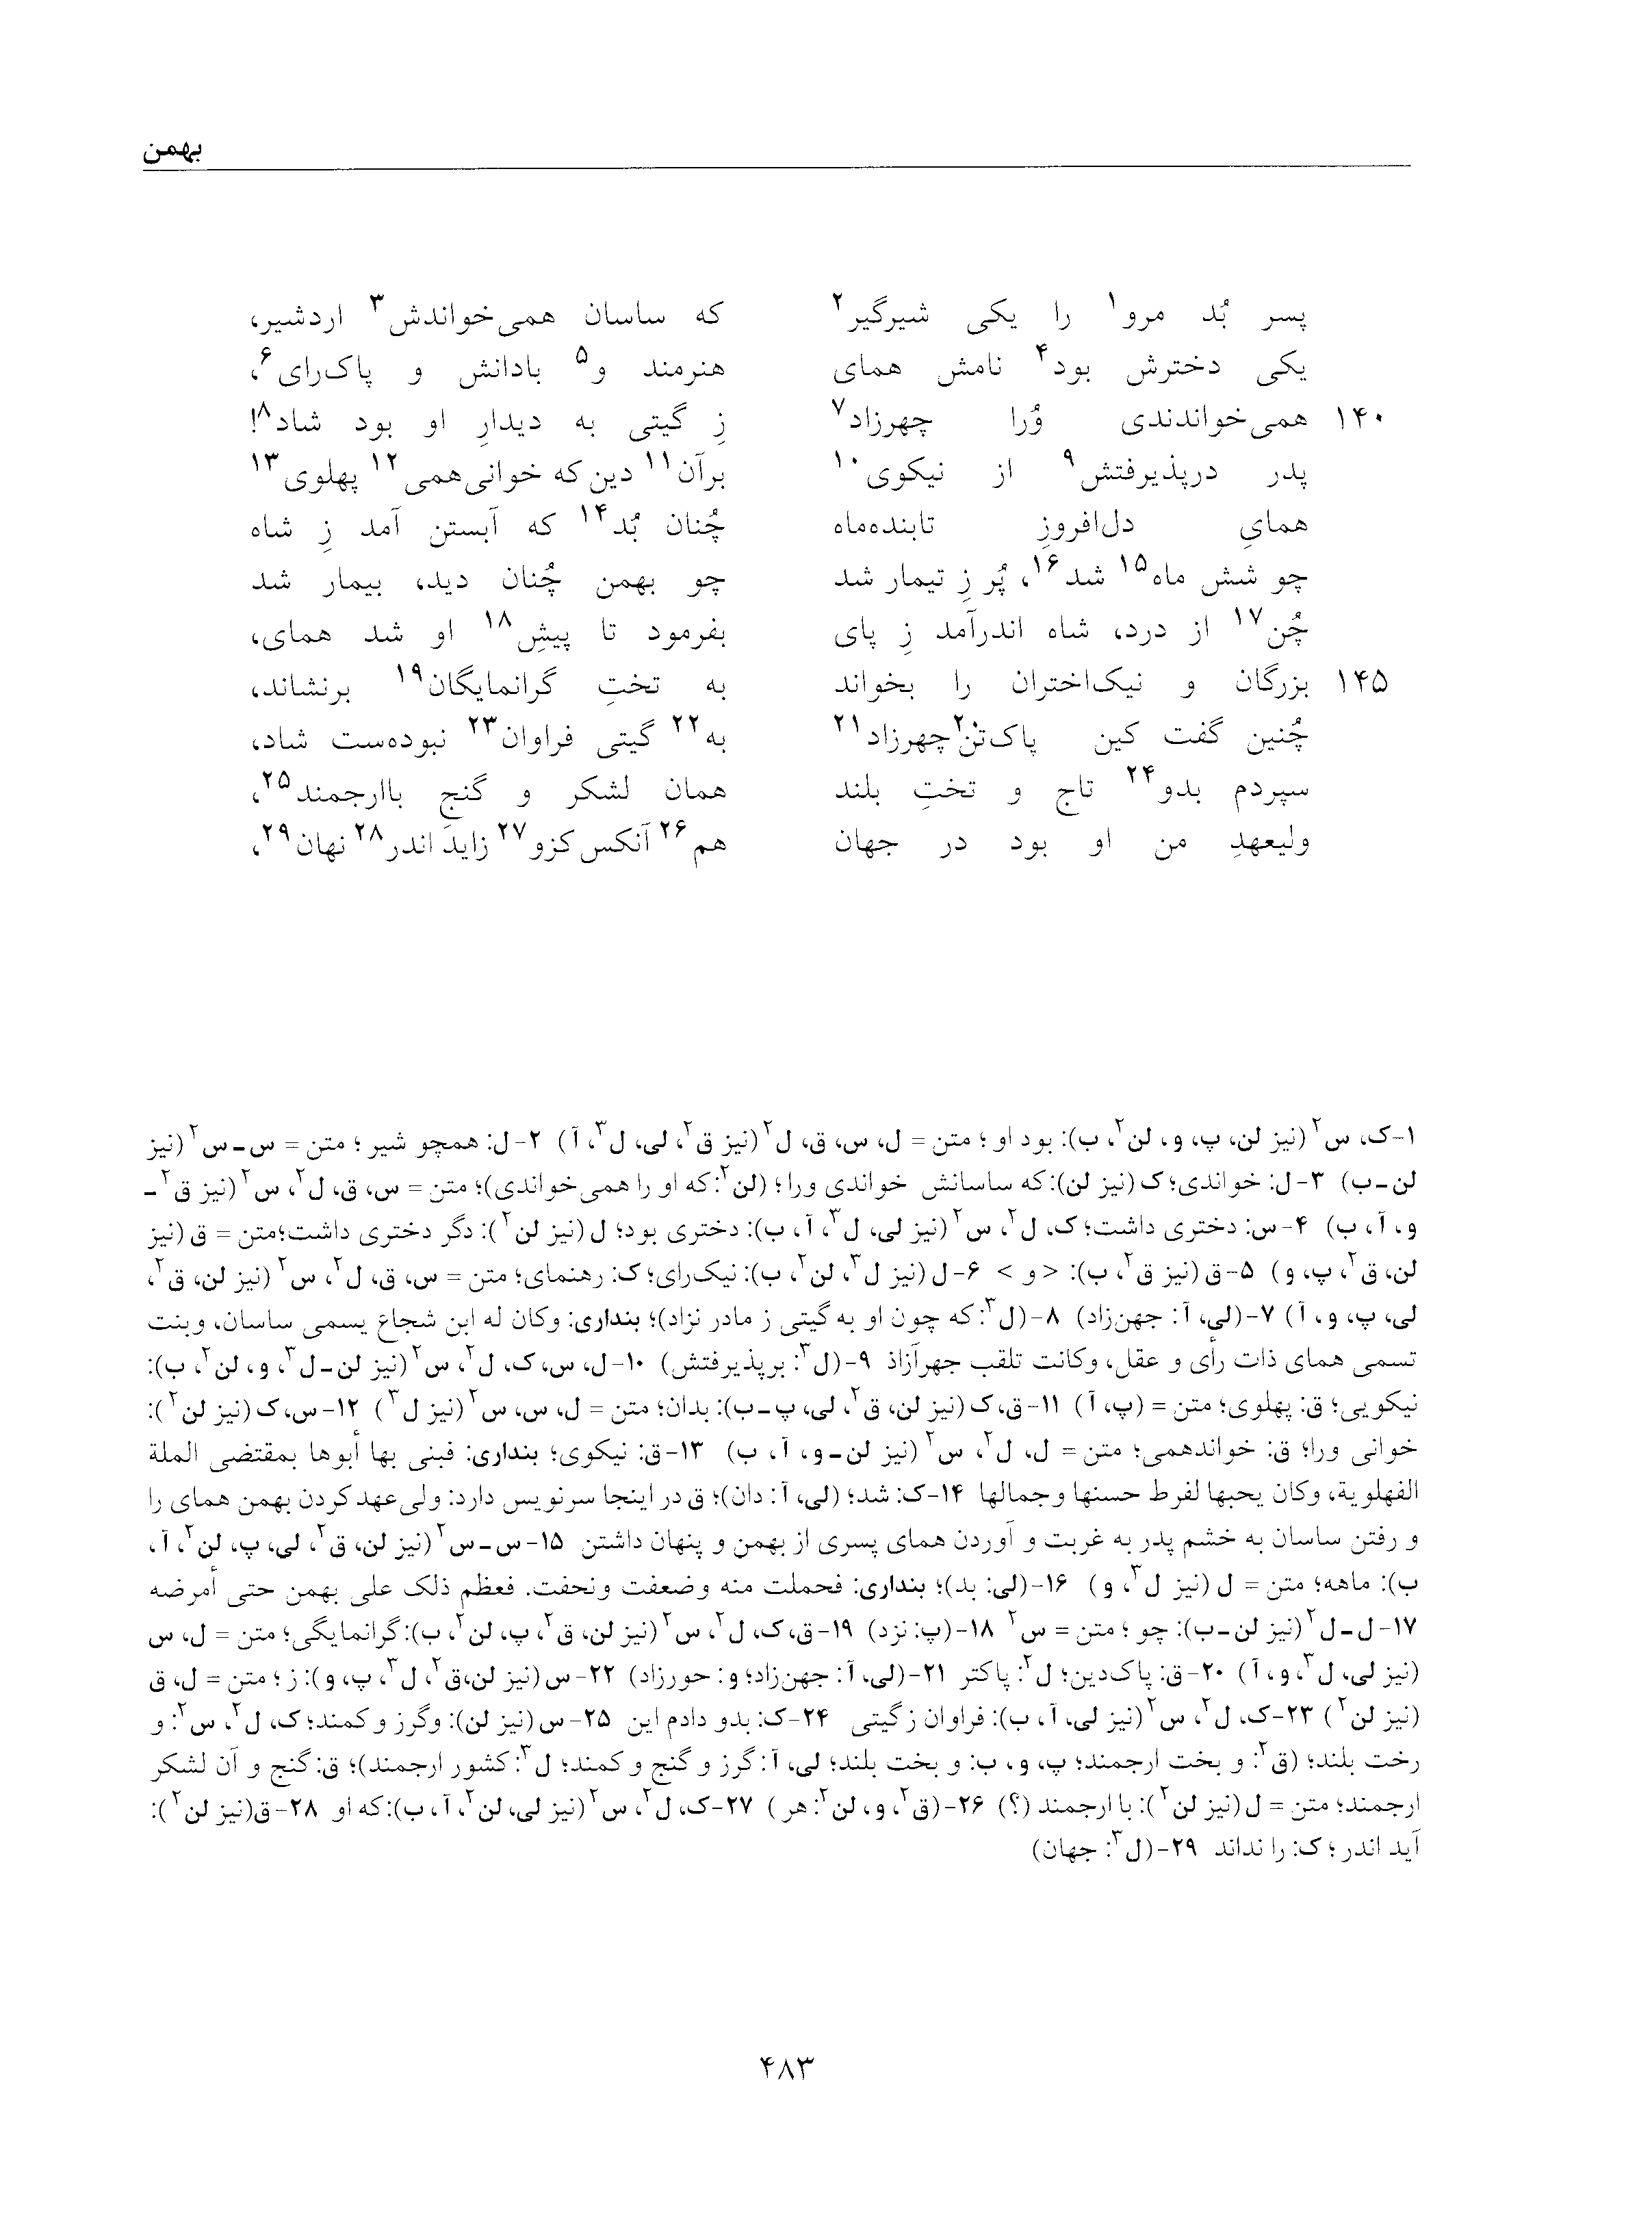 vol. 5, p. 483